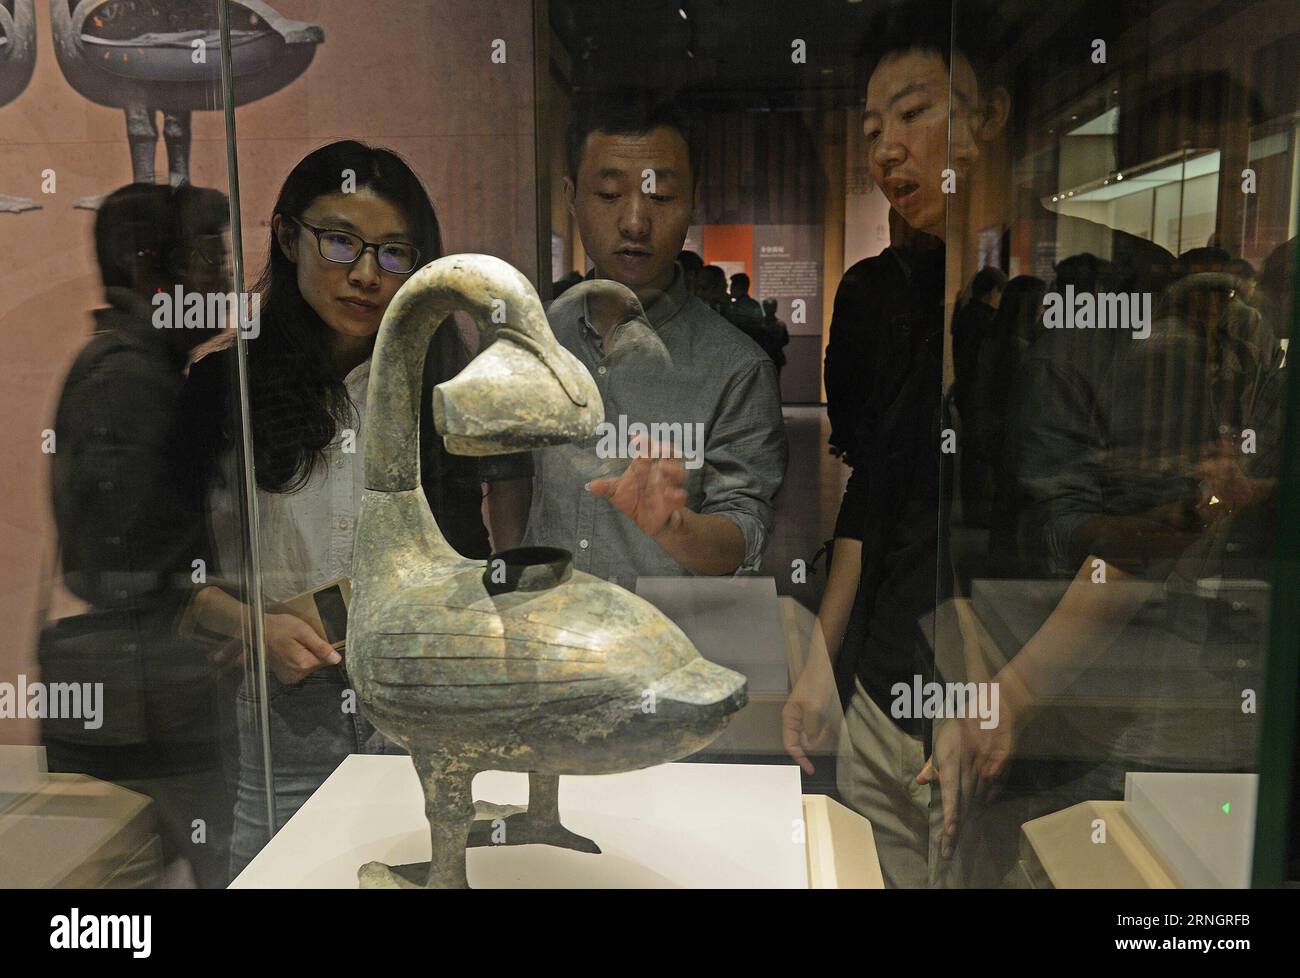 Han-Dynastie-Ausstellung a Nanchang, Cina (161011) -- NANCHANG, 11 ottobre 2016 -- i visitatori vedono una reliquia culturale in una mostra nel Museo provinciale di Jiangxi a Nanchang, capitale della provincia di Jiangxi, 11 ottobre 2016. La mostra mostrava 922 reliquie culturali rinvenute dalla tomba di 2.000 anni del marchese di Haihun, che ebbe un breve regno di 27 giorni come imperatore della dinastia Han occidentale (206 a.C. - 24 d.C.). (Yxb) CHINA-NANCHANG-MARQUIS OF HAIHUN-TOMB-CULTURAL RELICS-EXHIBITION(CN) WanxXiang PUBLICATIONxNOTxINxCHN Han Dynasty Exhibition a Nanchang Cina Nanchang OCT 11 Foto Stock